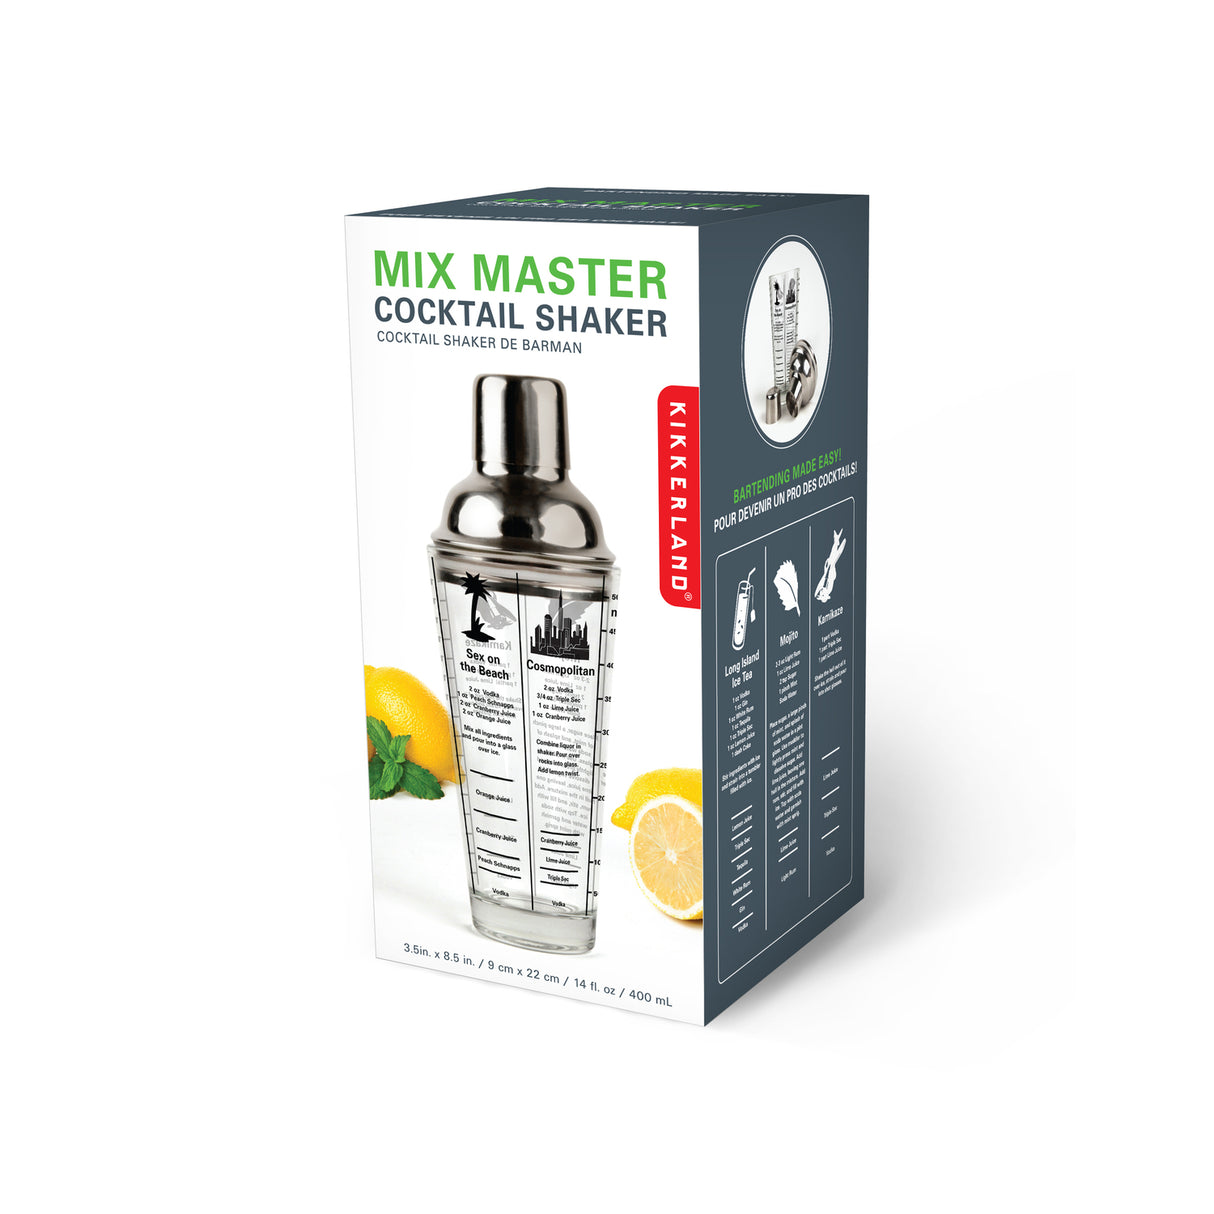 Mix Master Cocktail Shaker mit aufgedruckten Rezepten